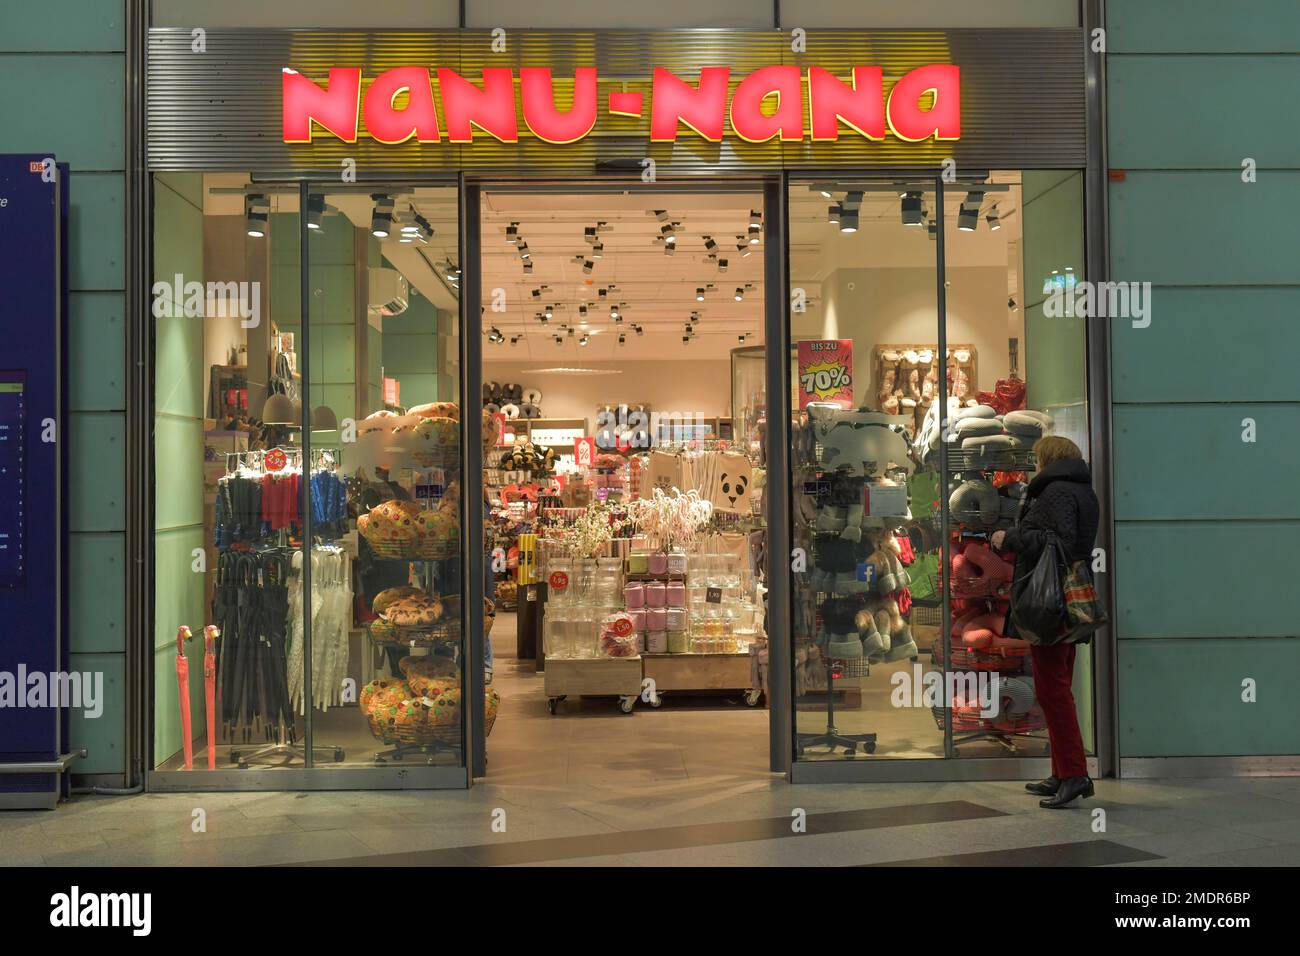 Nanu Nana, Shopfront at Friedrichstrasse Station, Mitte, Berlin, Germany  Stock Photo - Alamy